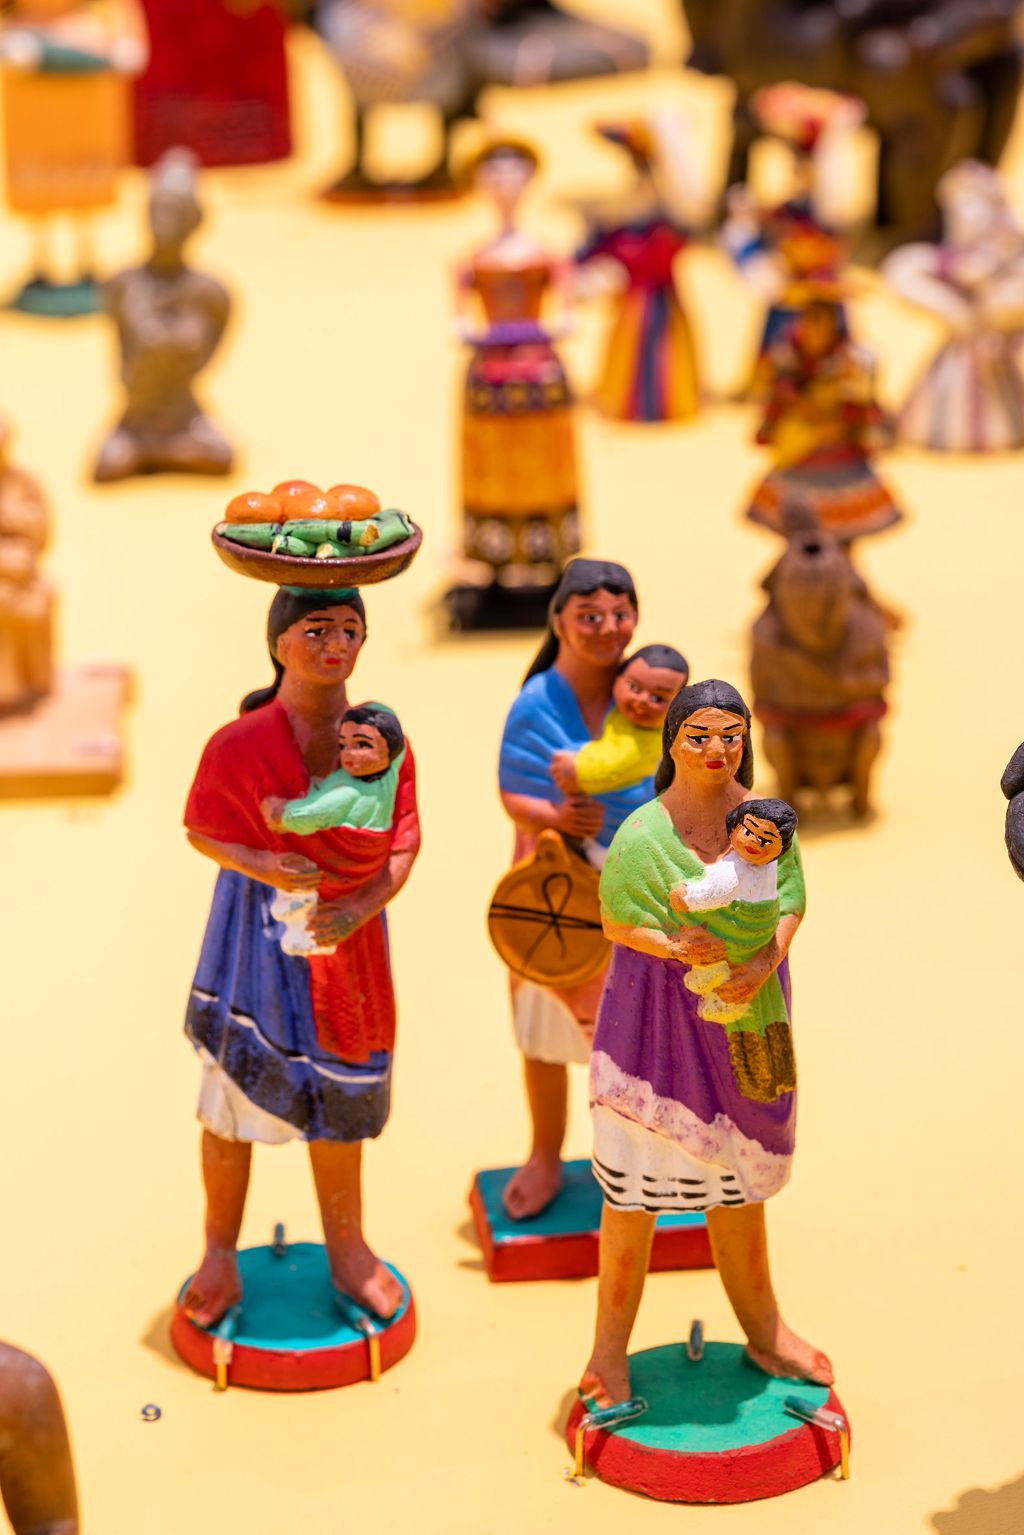 Auf dem Foto stehen drei Figuren im Vordergrund. Es sind drei Frauen aus Südamerika, gekleidet in dortige Trachten, die alle Kinder auf den Armen halten.